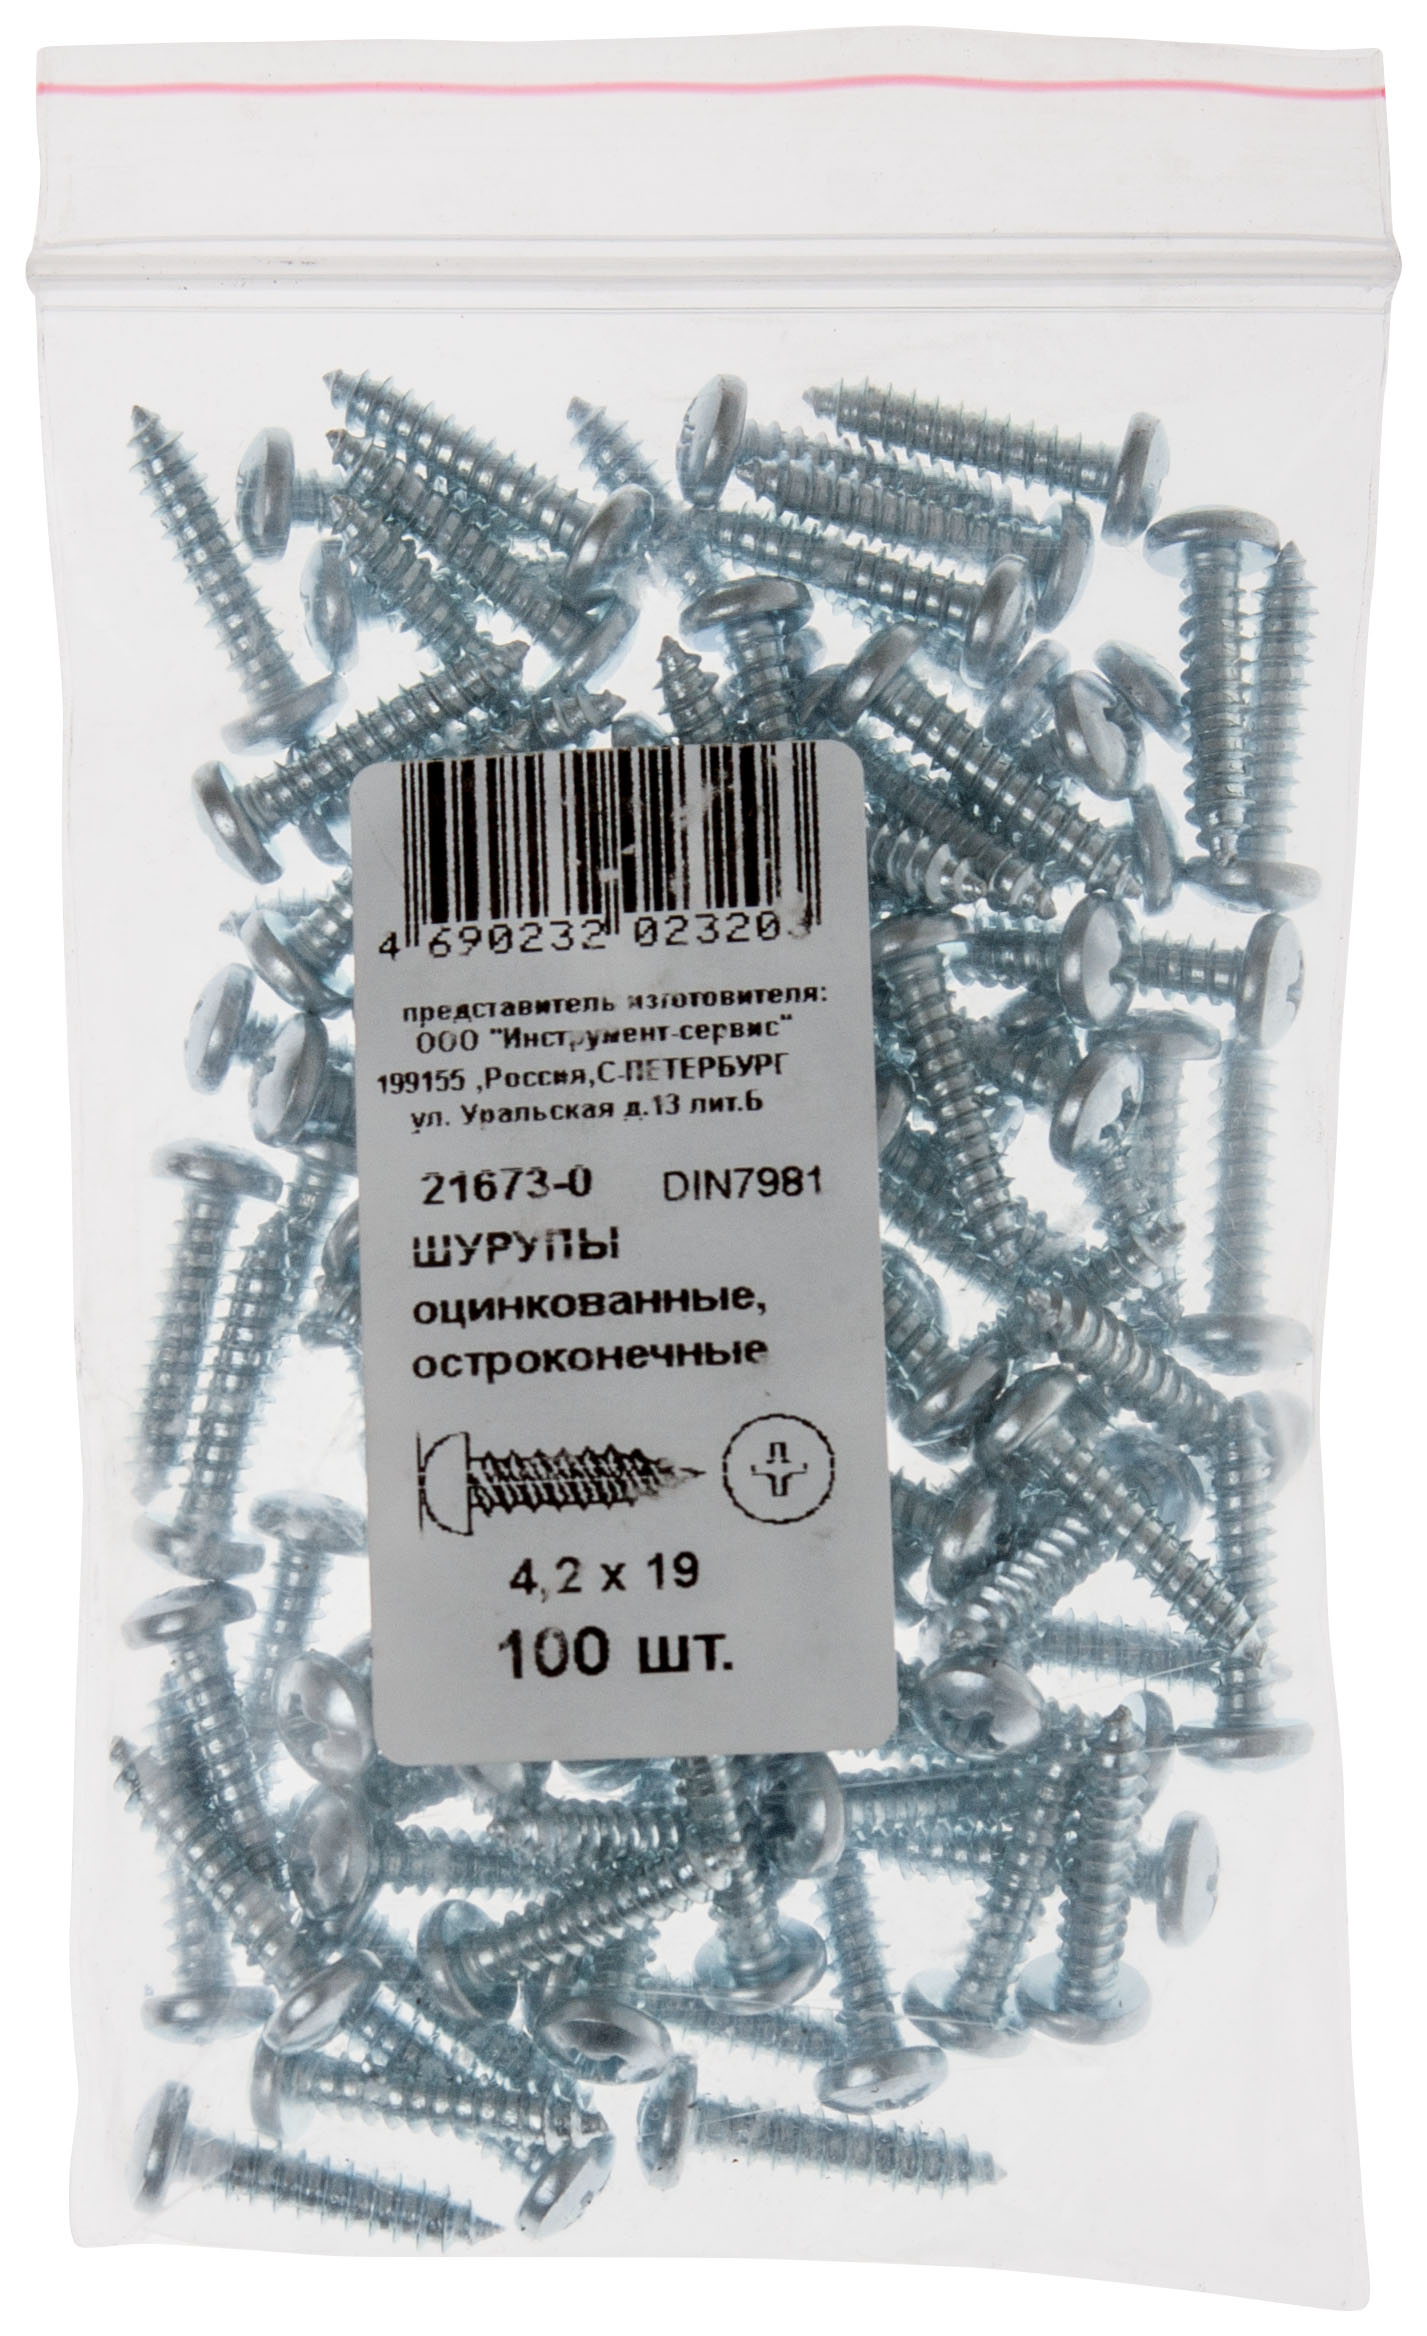 КАТЕГОРИЯ "О" "стандартная"фасовка в полиэтиленовые пакетики (zip-look) цена указана за 100 шт.